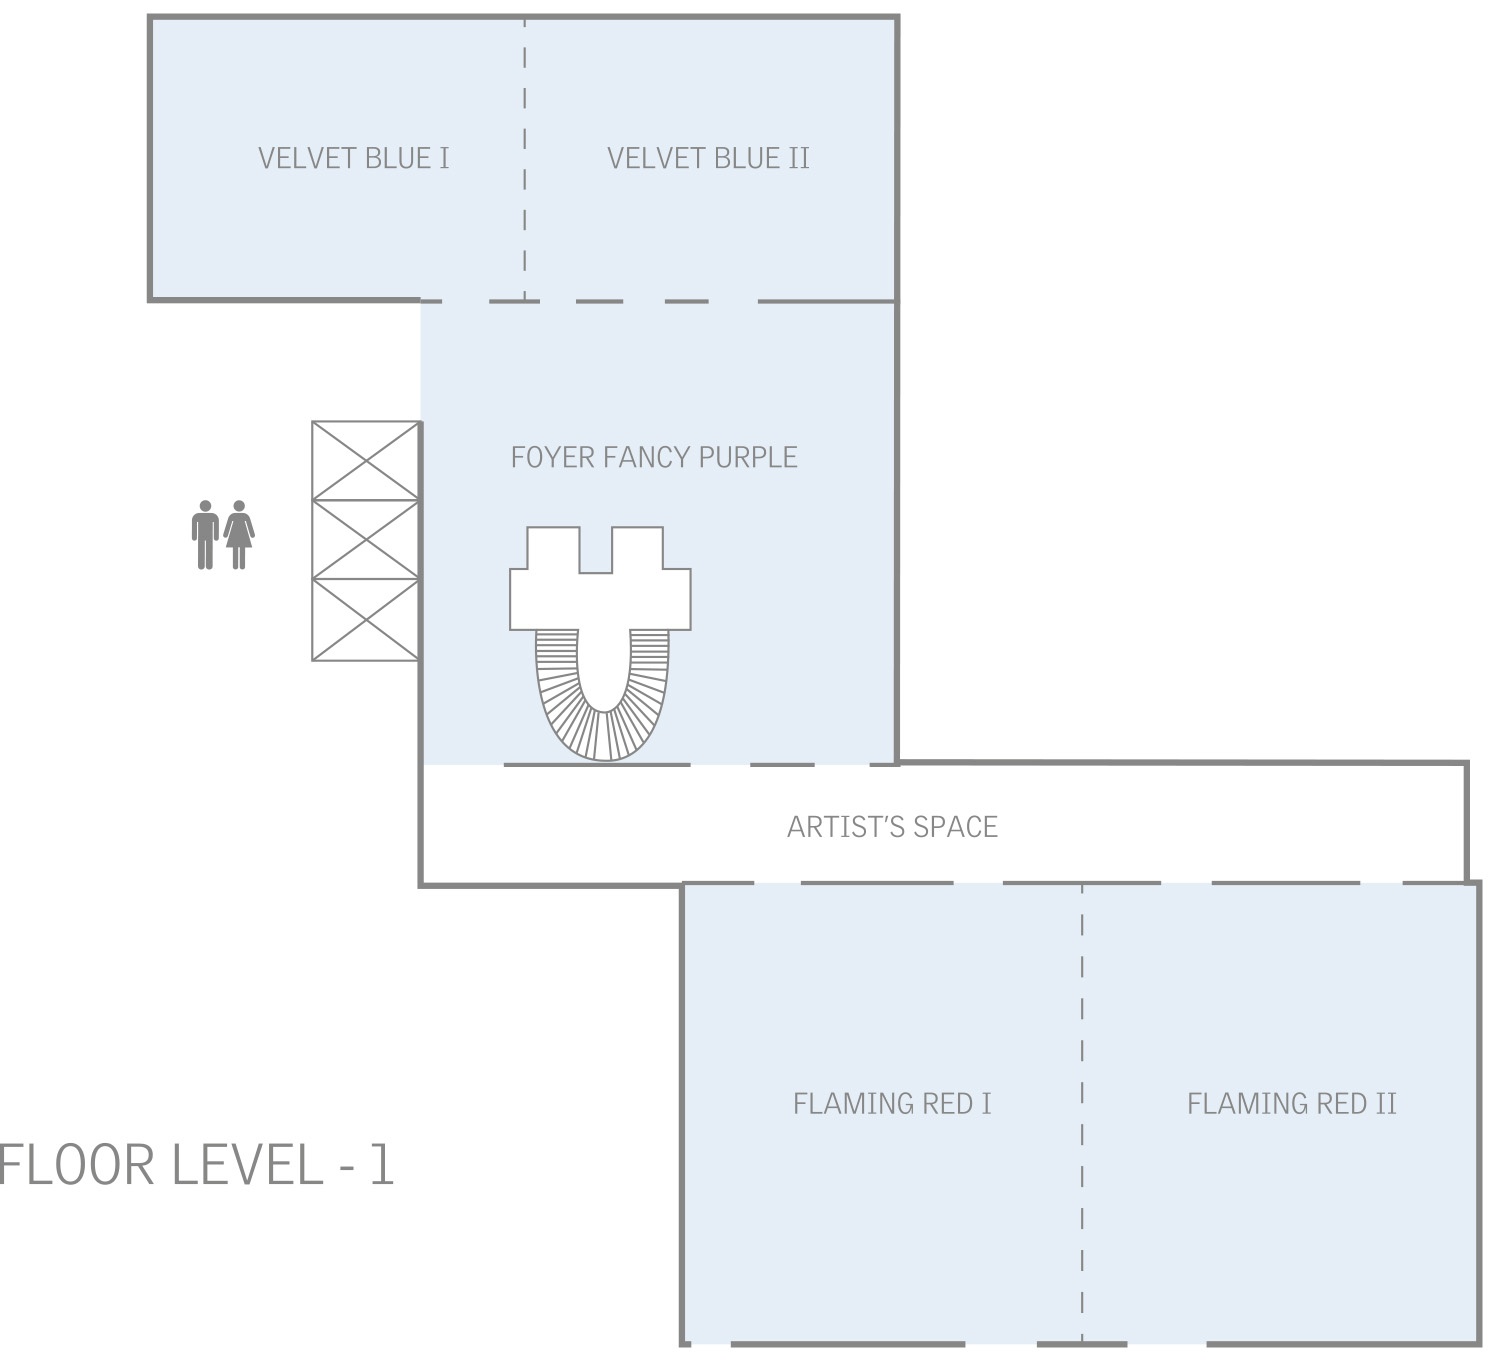 Floor plan level -1